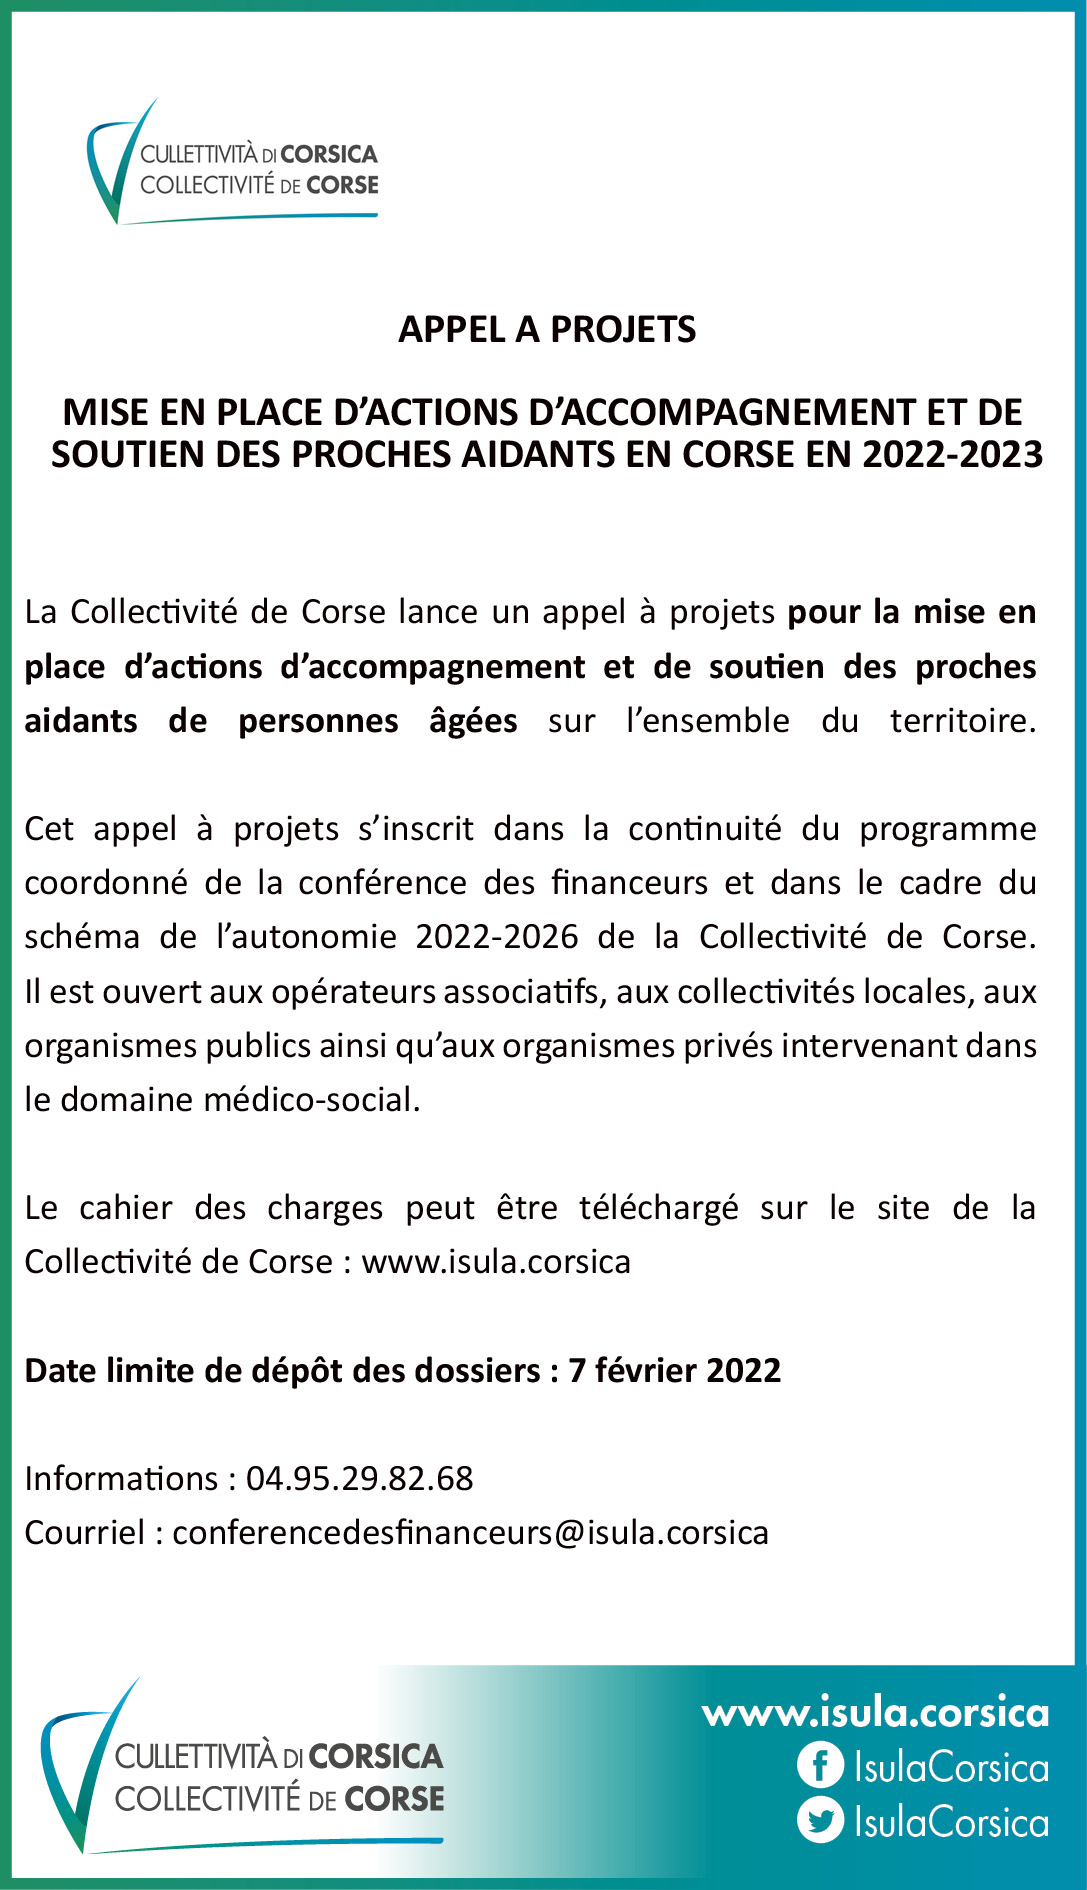 Appel à projets Mise en place d'actions d'accompagnement et de soutien des proches aidants sur le territoire de la Corse en 2022-2023